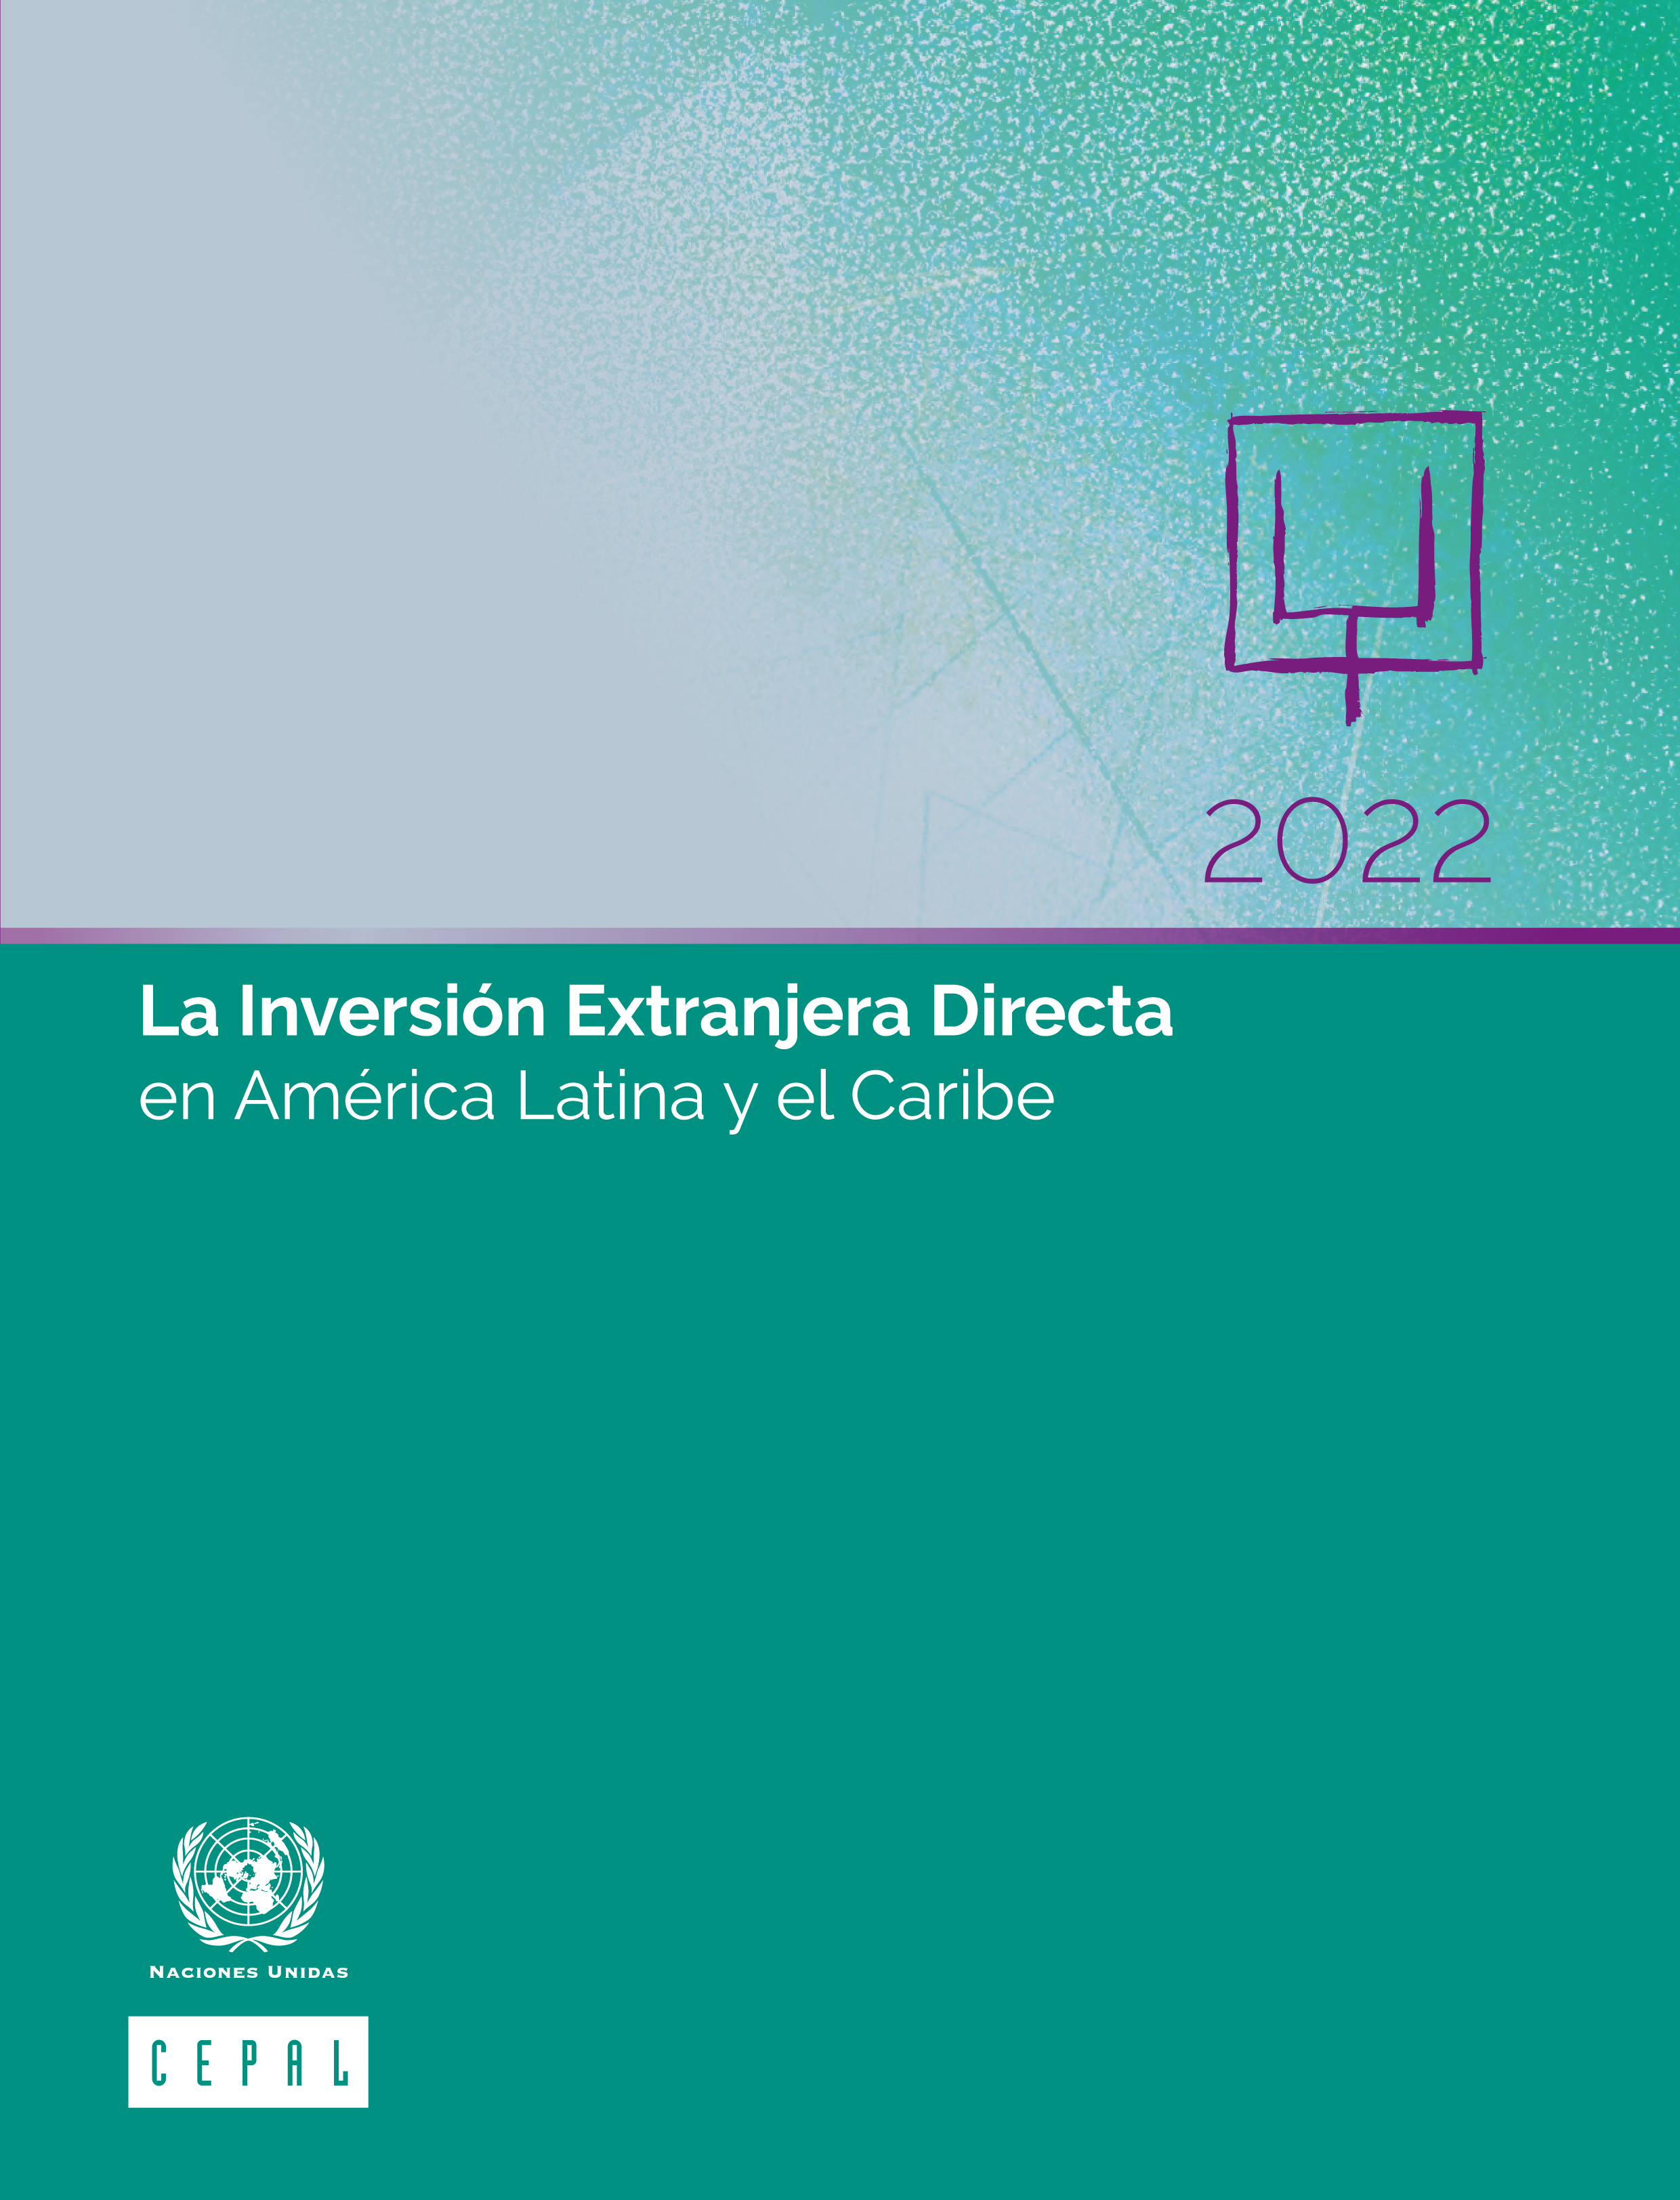 image of La Inversión Extranjera Directa en América Latina y el Caribe 2022